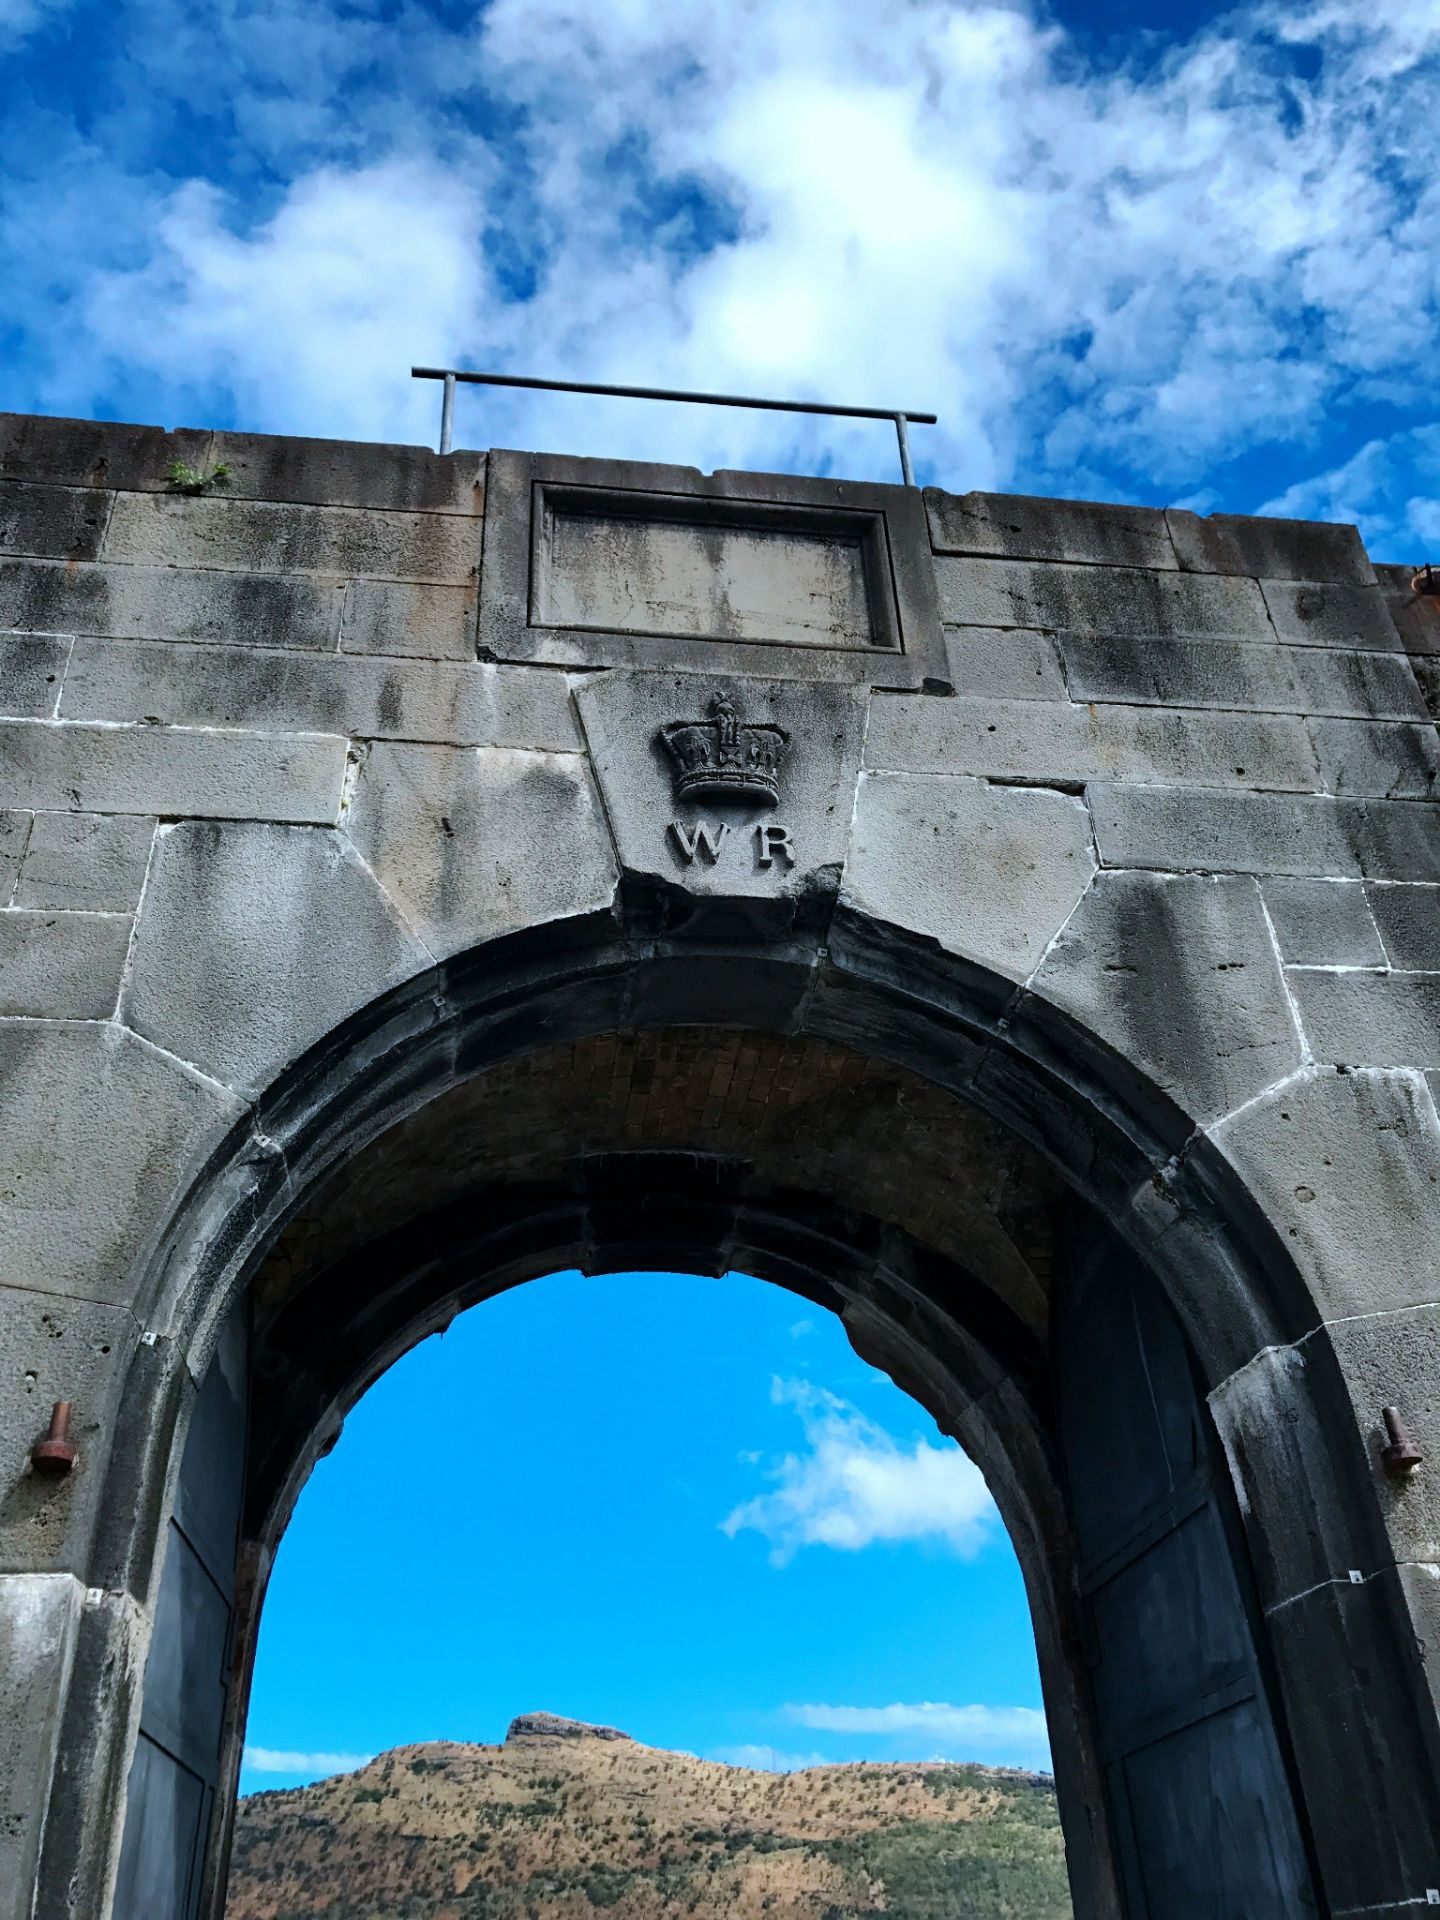 毛里求斯的炮台山是这里最为著名的一处景点，这里在古代曾经是海防重要的堡垒。炮台山顾名思义，居高临下可